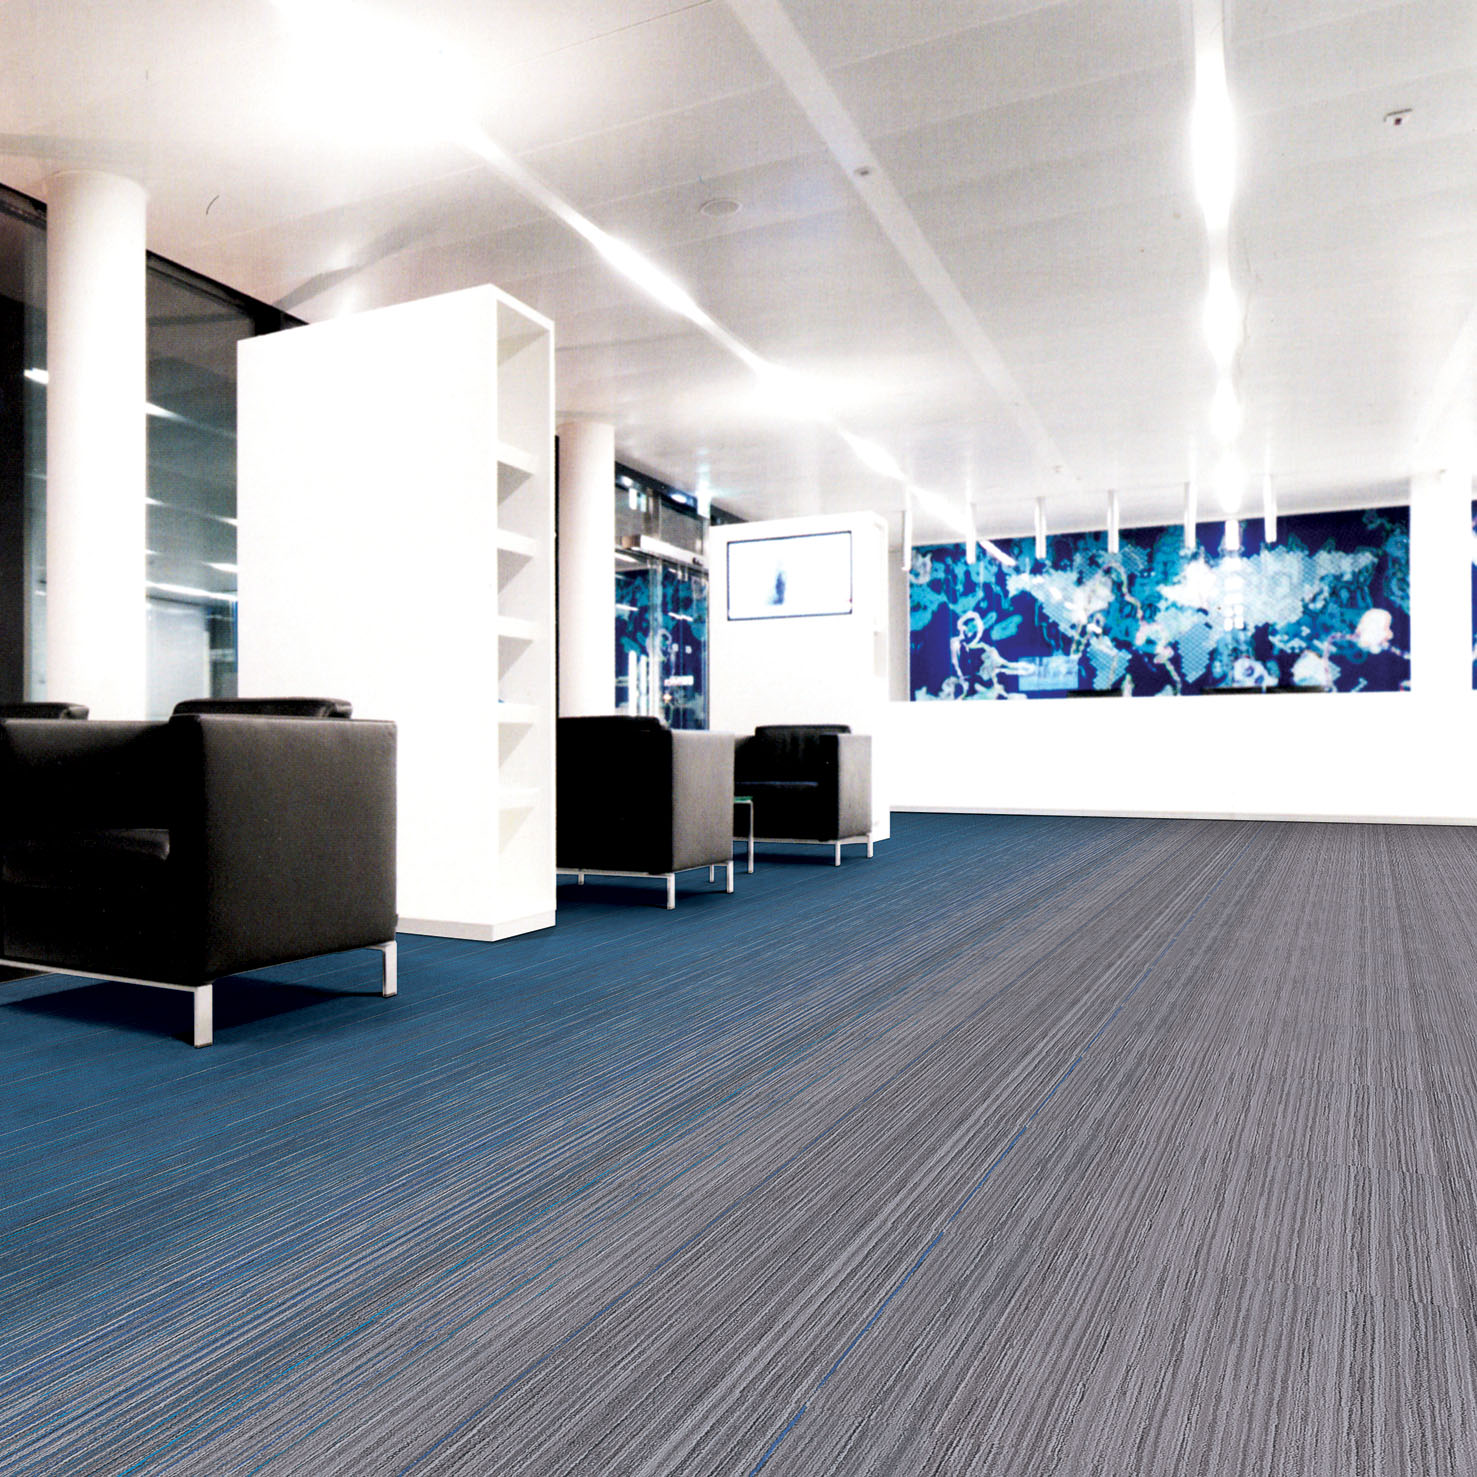 High Quality Voxfloor Carpet Tiles Interface CTTN Tile Carpet Wholesale Auditorium Public Office Blue Carpet Tile